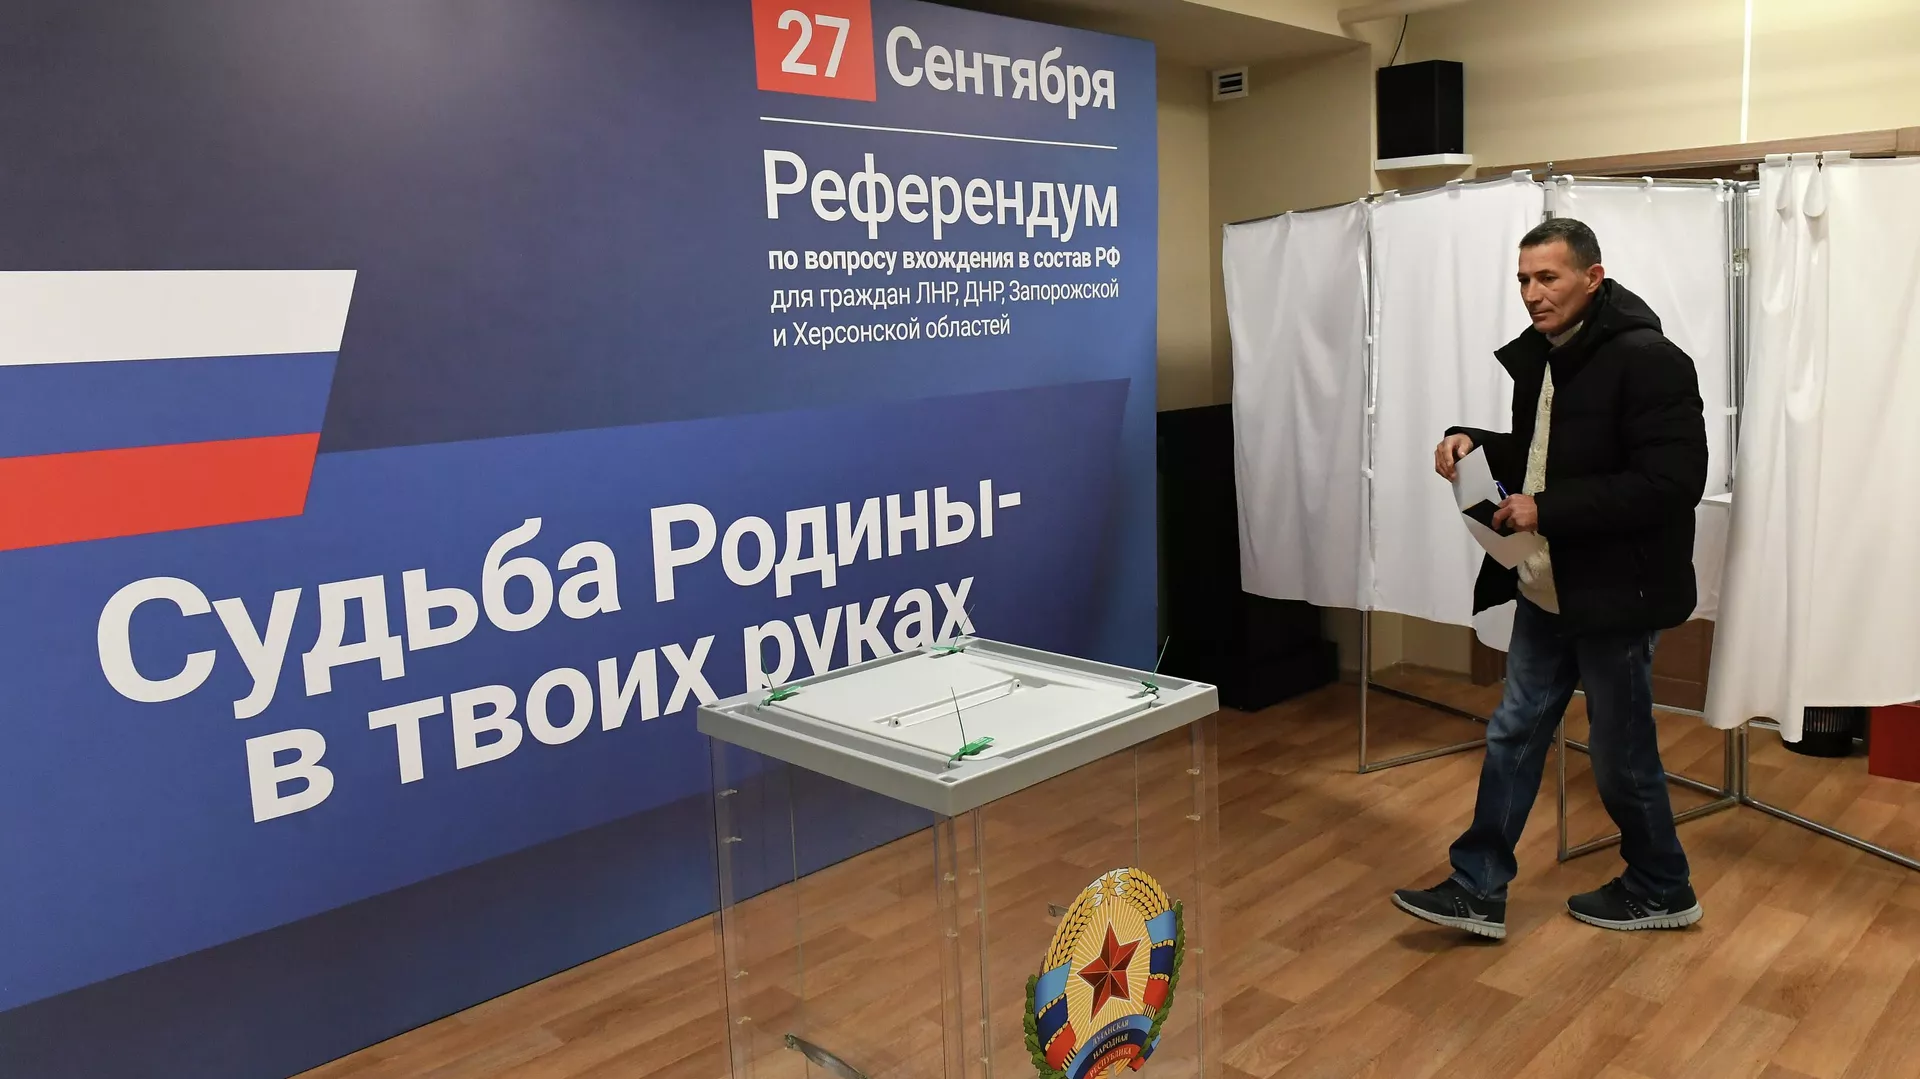 Termina la votación sobre la adhesión a Rusia en Lugansk, Jersón y Zaporiyia